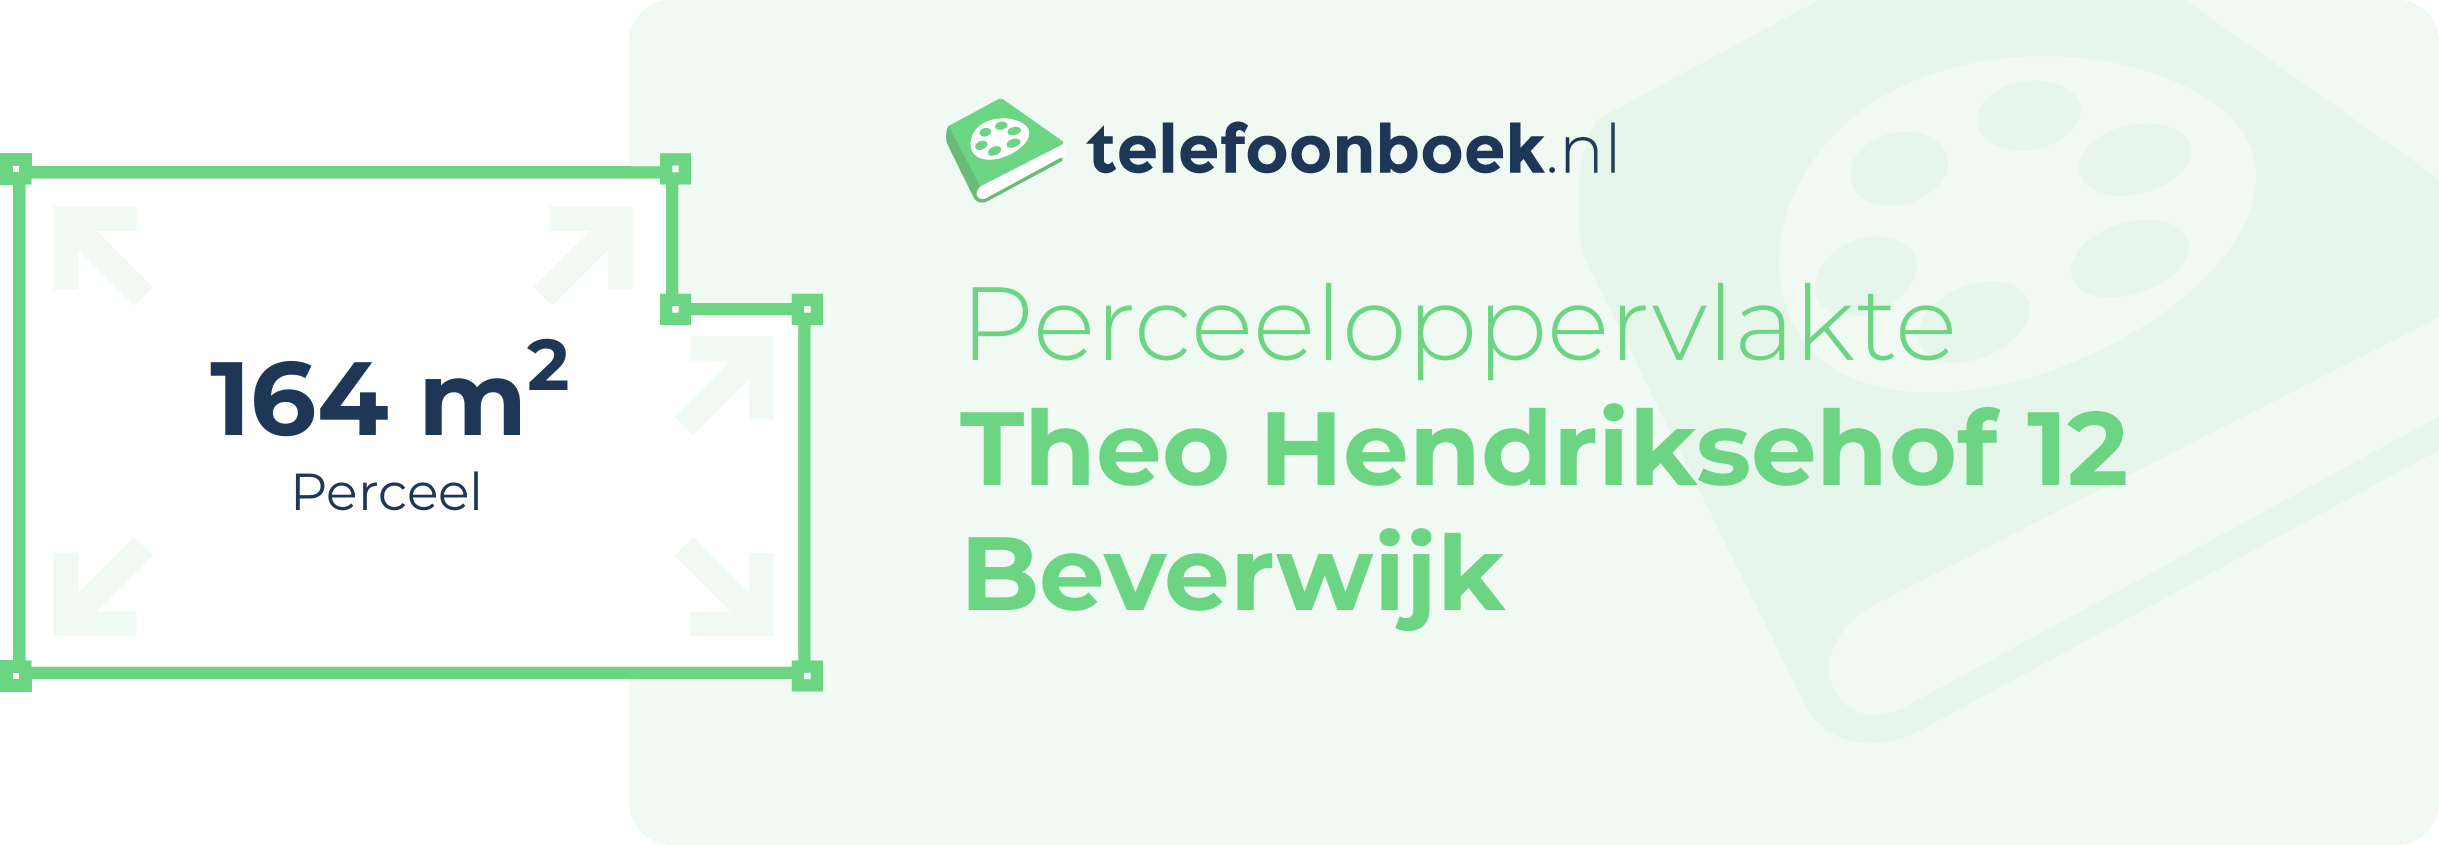 Perceeloppervlakte Theo Hendriksehof 12 Beverwijk